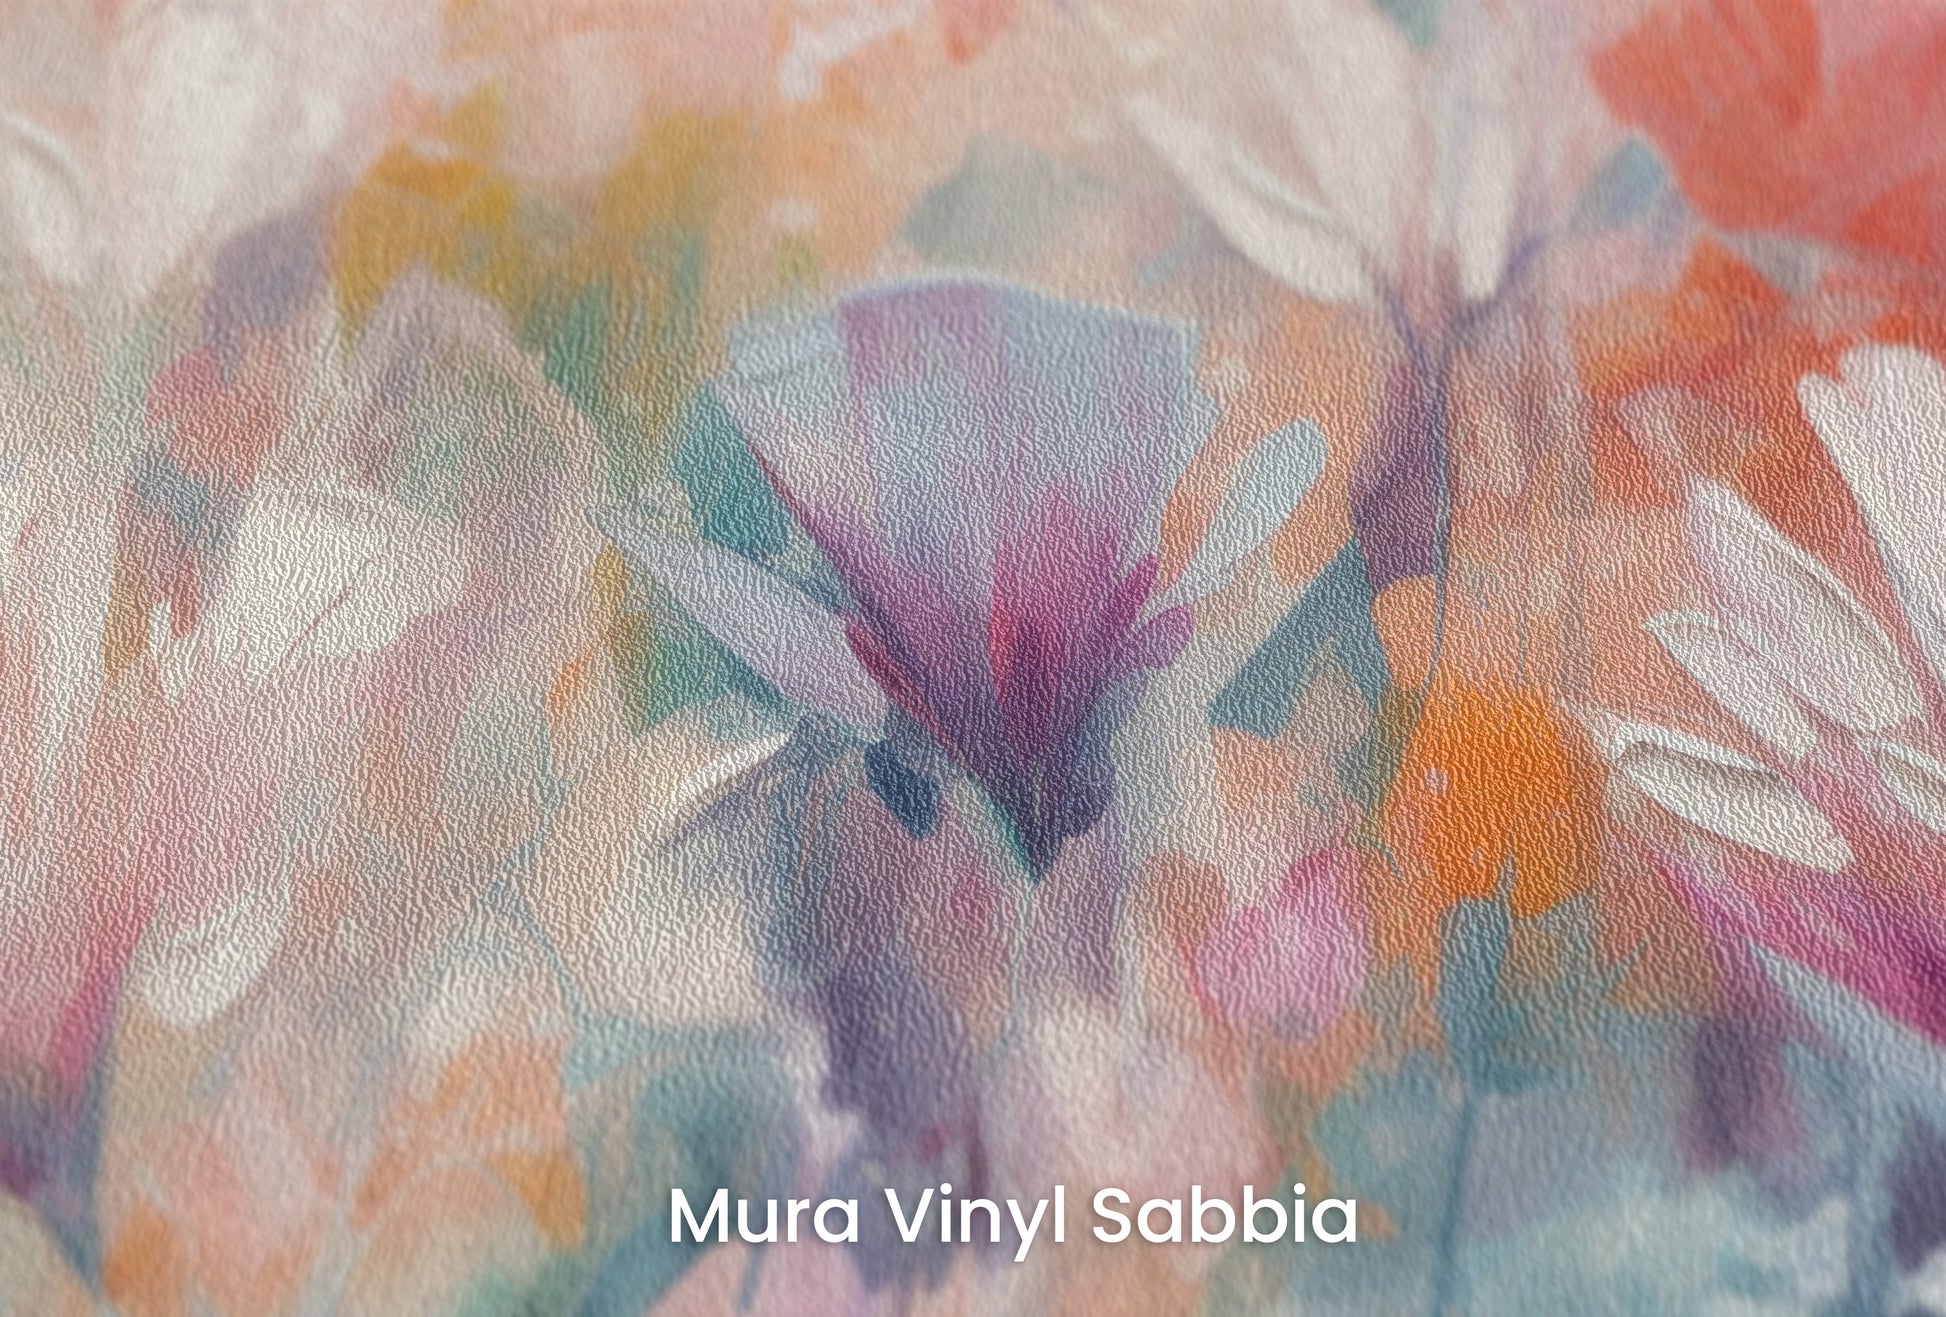 Zbliżenie na artystyczną fototapetę o nazwie Lively Floral Symphony na podłożu Mura Vinyl Sabbia struktura grubego ziarna piasku.